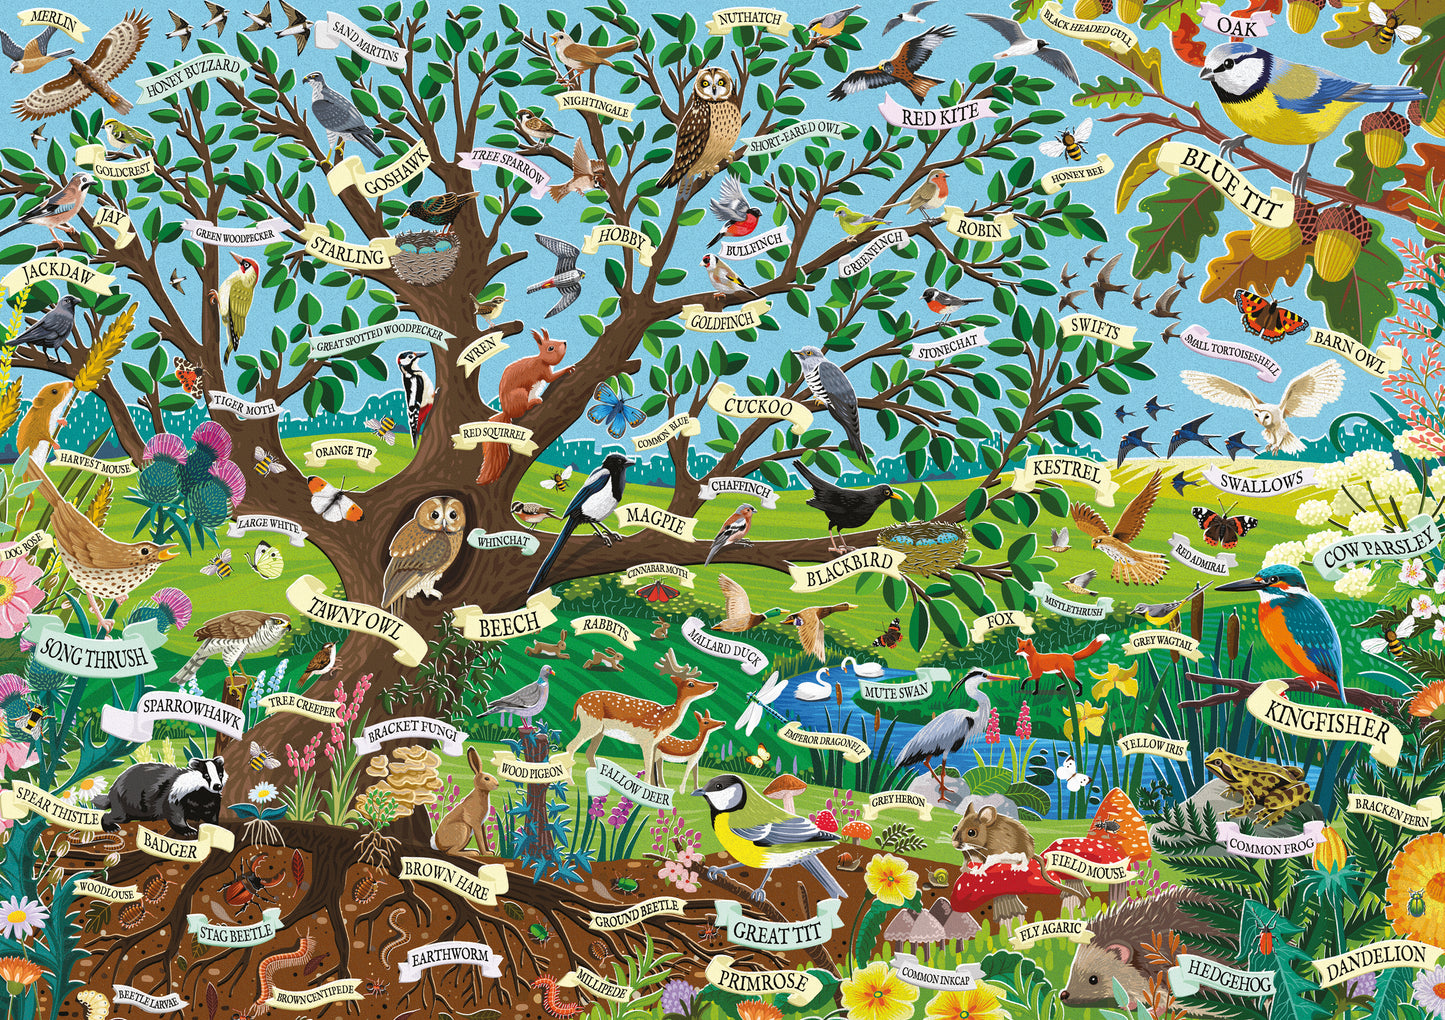 RSPB Wildlife Tree - Family Puzzle - 500XL Piece Jigsaw Puzzle